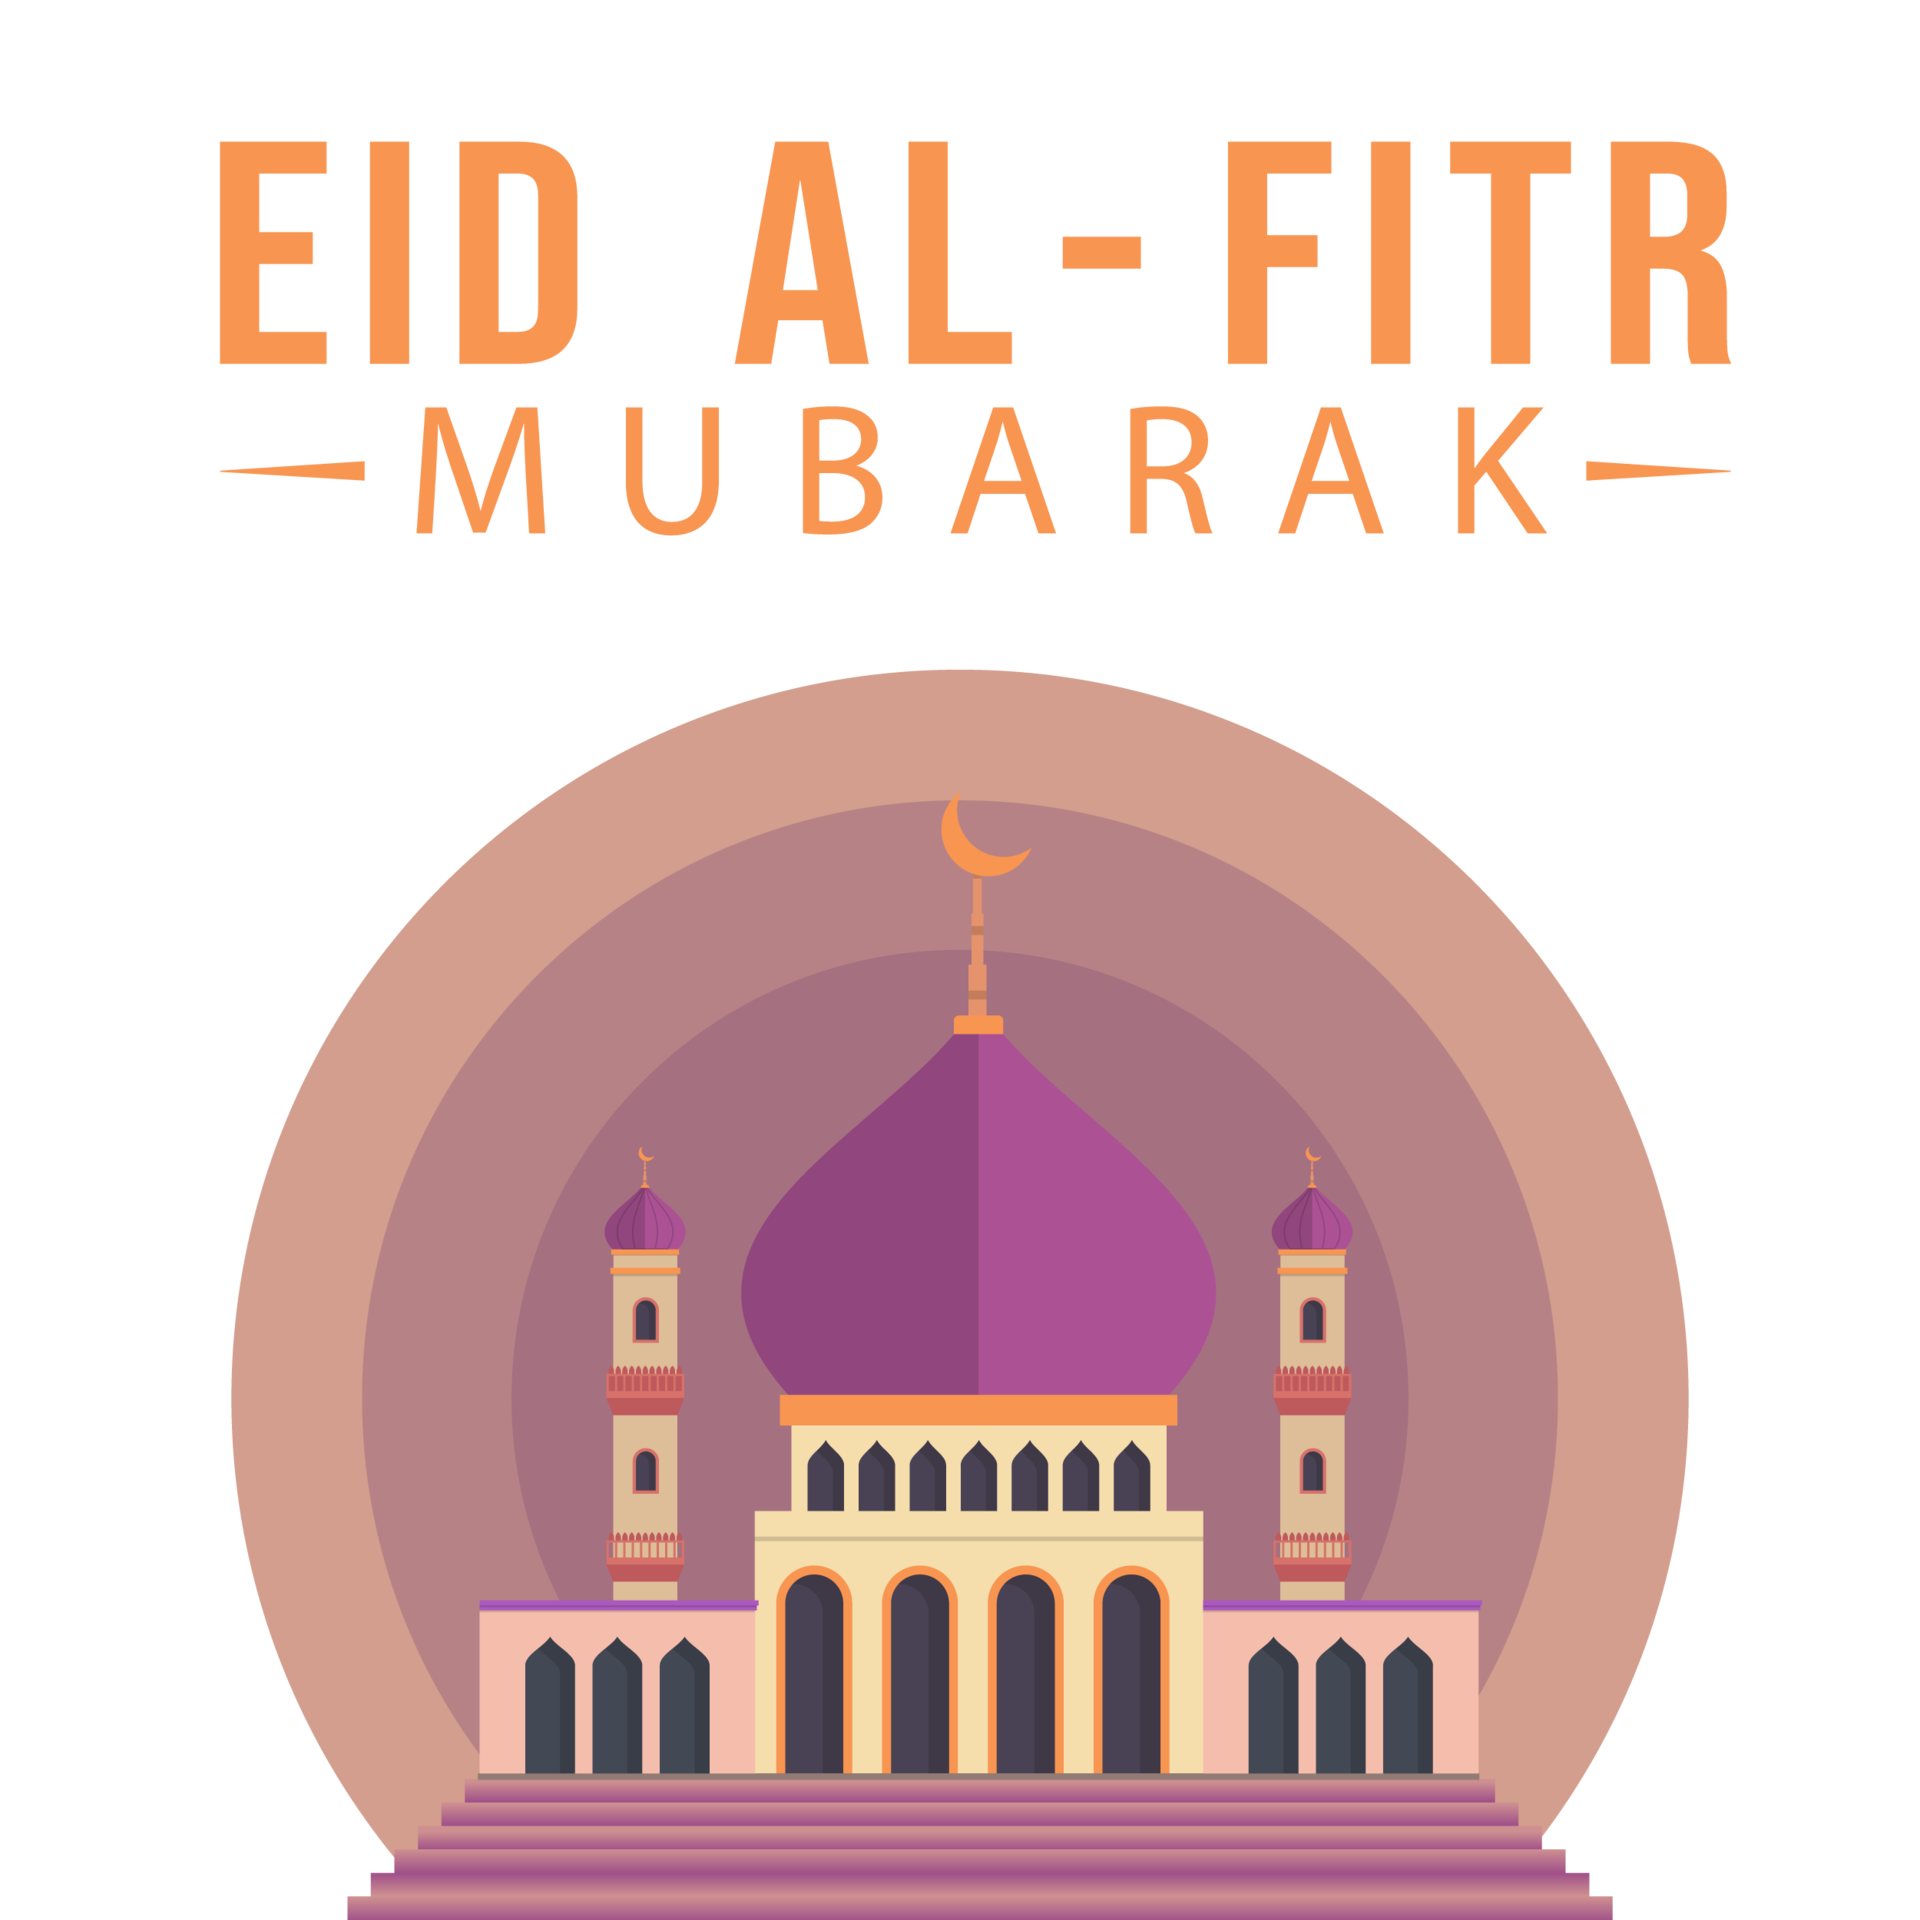    Eid Ul Fitr wish